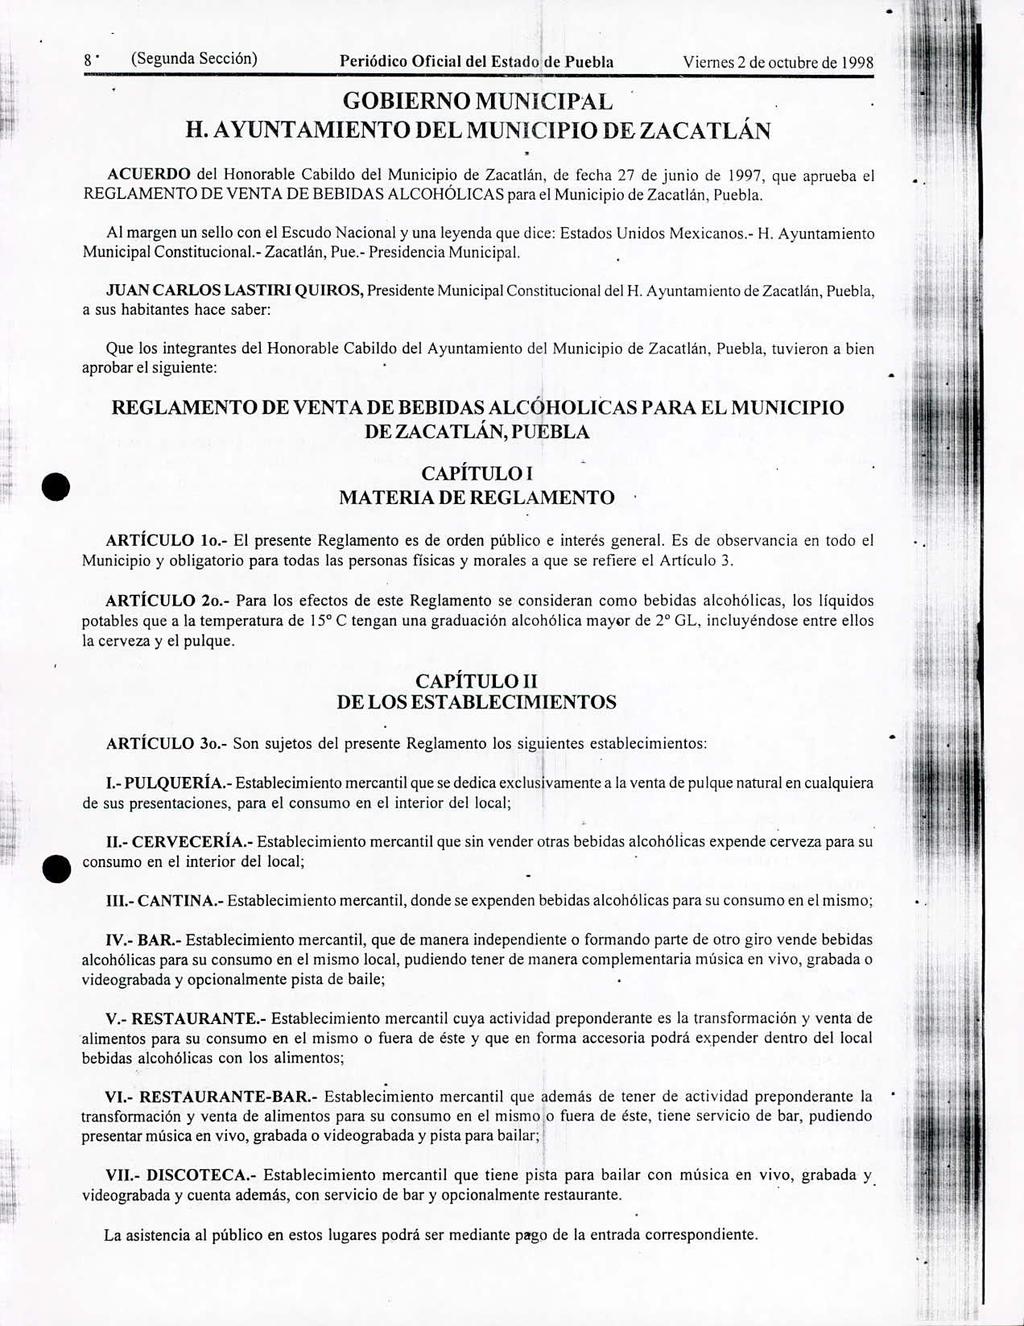 8 (Segunda Sección) Periódico Oficial del Estado de Puebla Viernes 2 de octubre de 998 GOBIERNO MUNICIPAL H AYUNTAMIENTO DEL MUNICIPIO DE ZACATLÁN ACUERDO del Honorable Cabildo del Municipio de